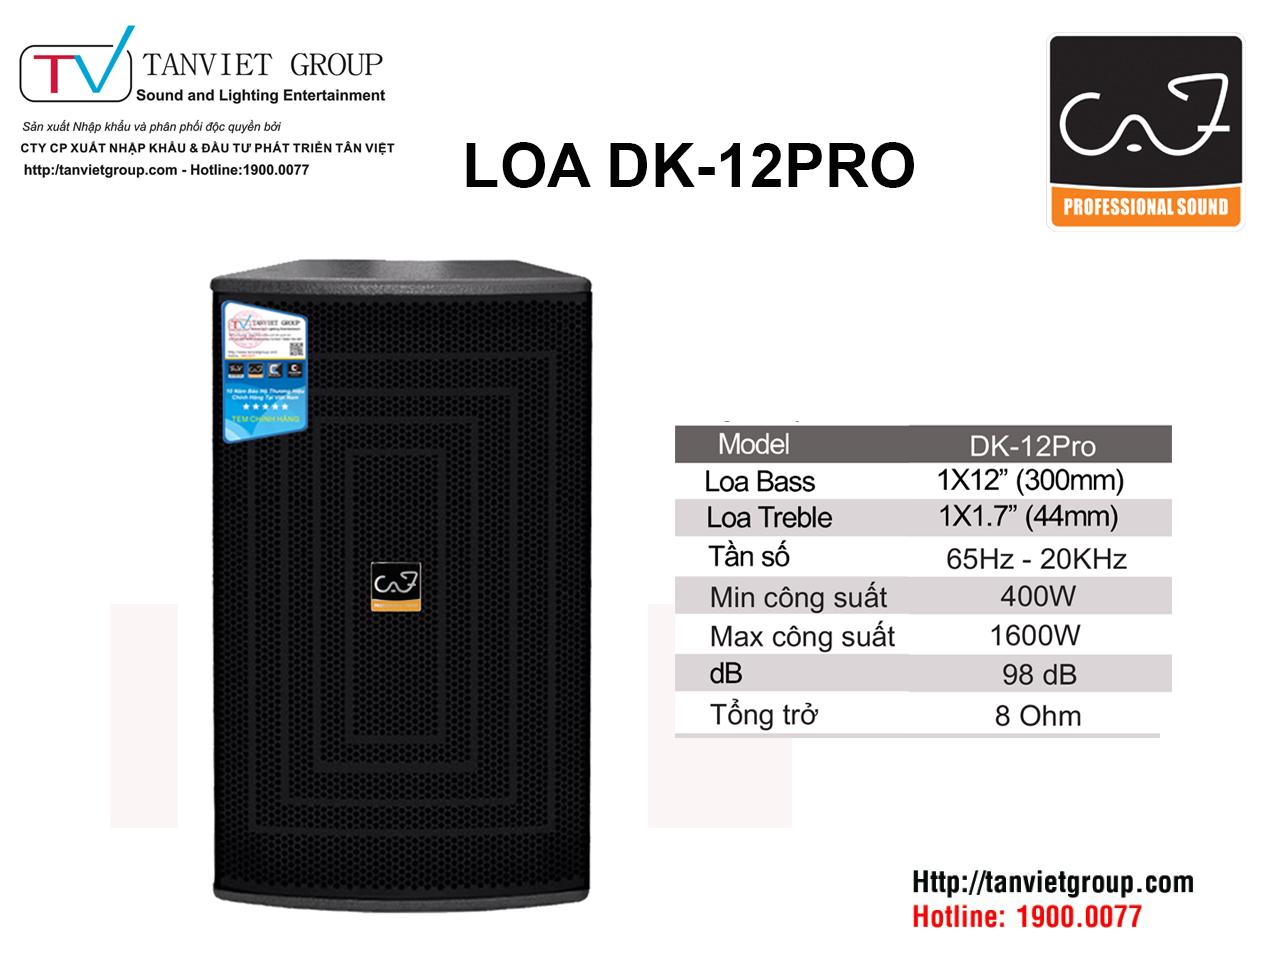 Loa DK-12PRO - sở hữu âm thanh chất lượng cao